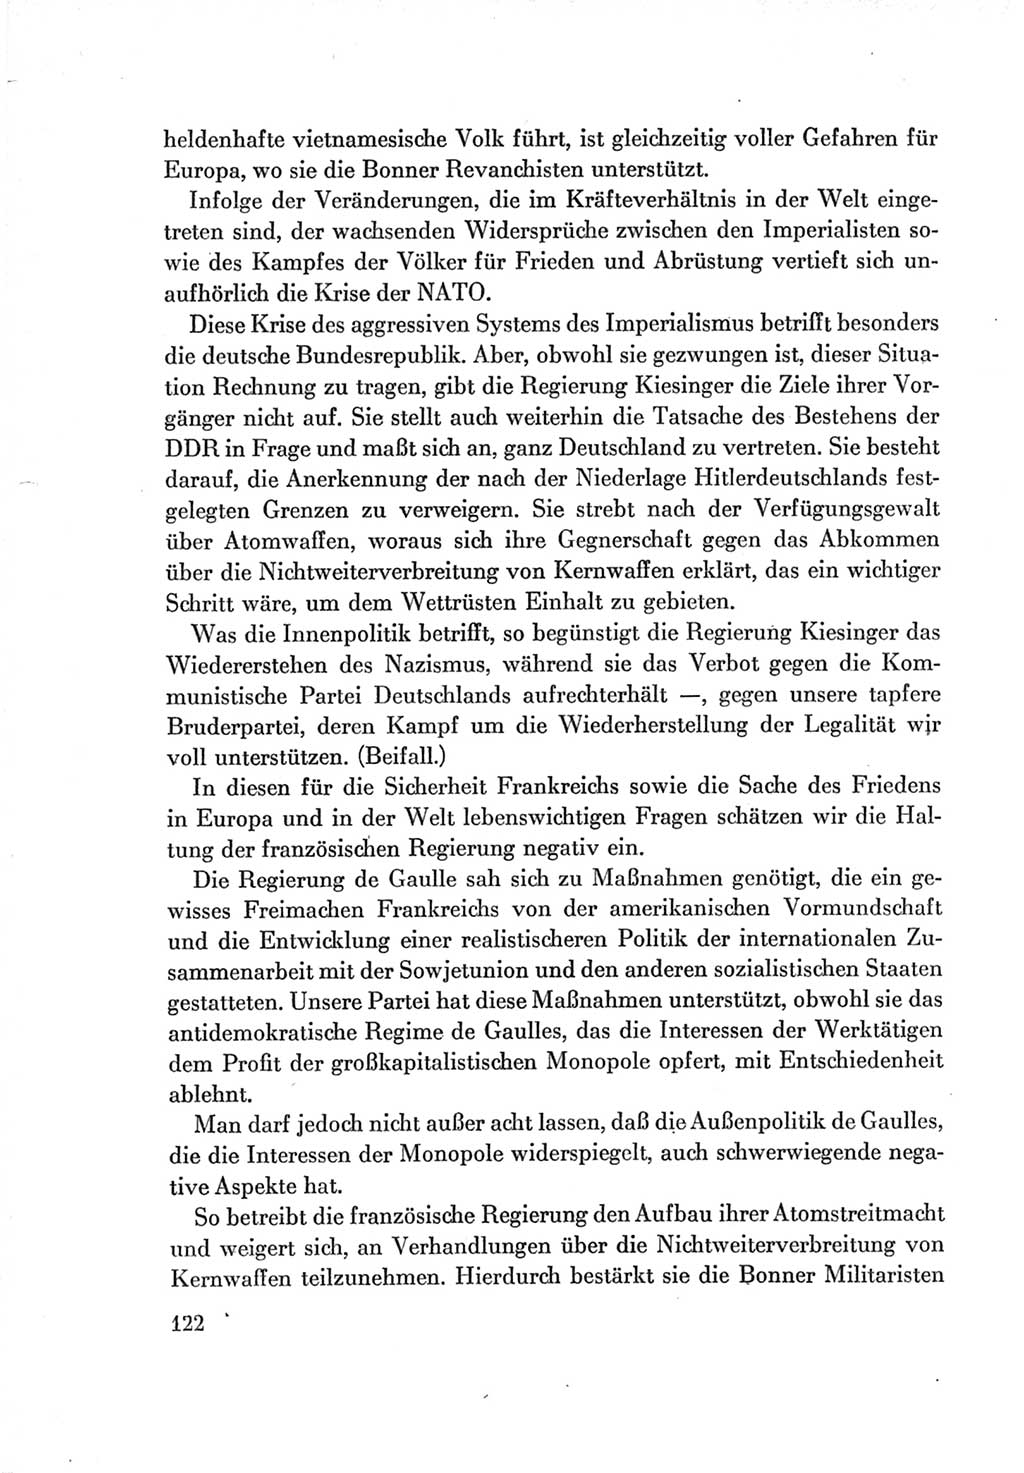 Protokoll der Verhandlungen des Ⅶ. Parteitages der Sozialistischen Einheitspartei Deutschlands (SED) [Deutsche Demokratische Republik (DDR)] 1967, Band Ⅱ, Seite 122 (Prot. Verh. Ⅶ. PT SED DDR 1967, Bd. Ⅱ, S. 122)